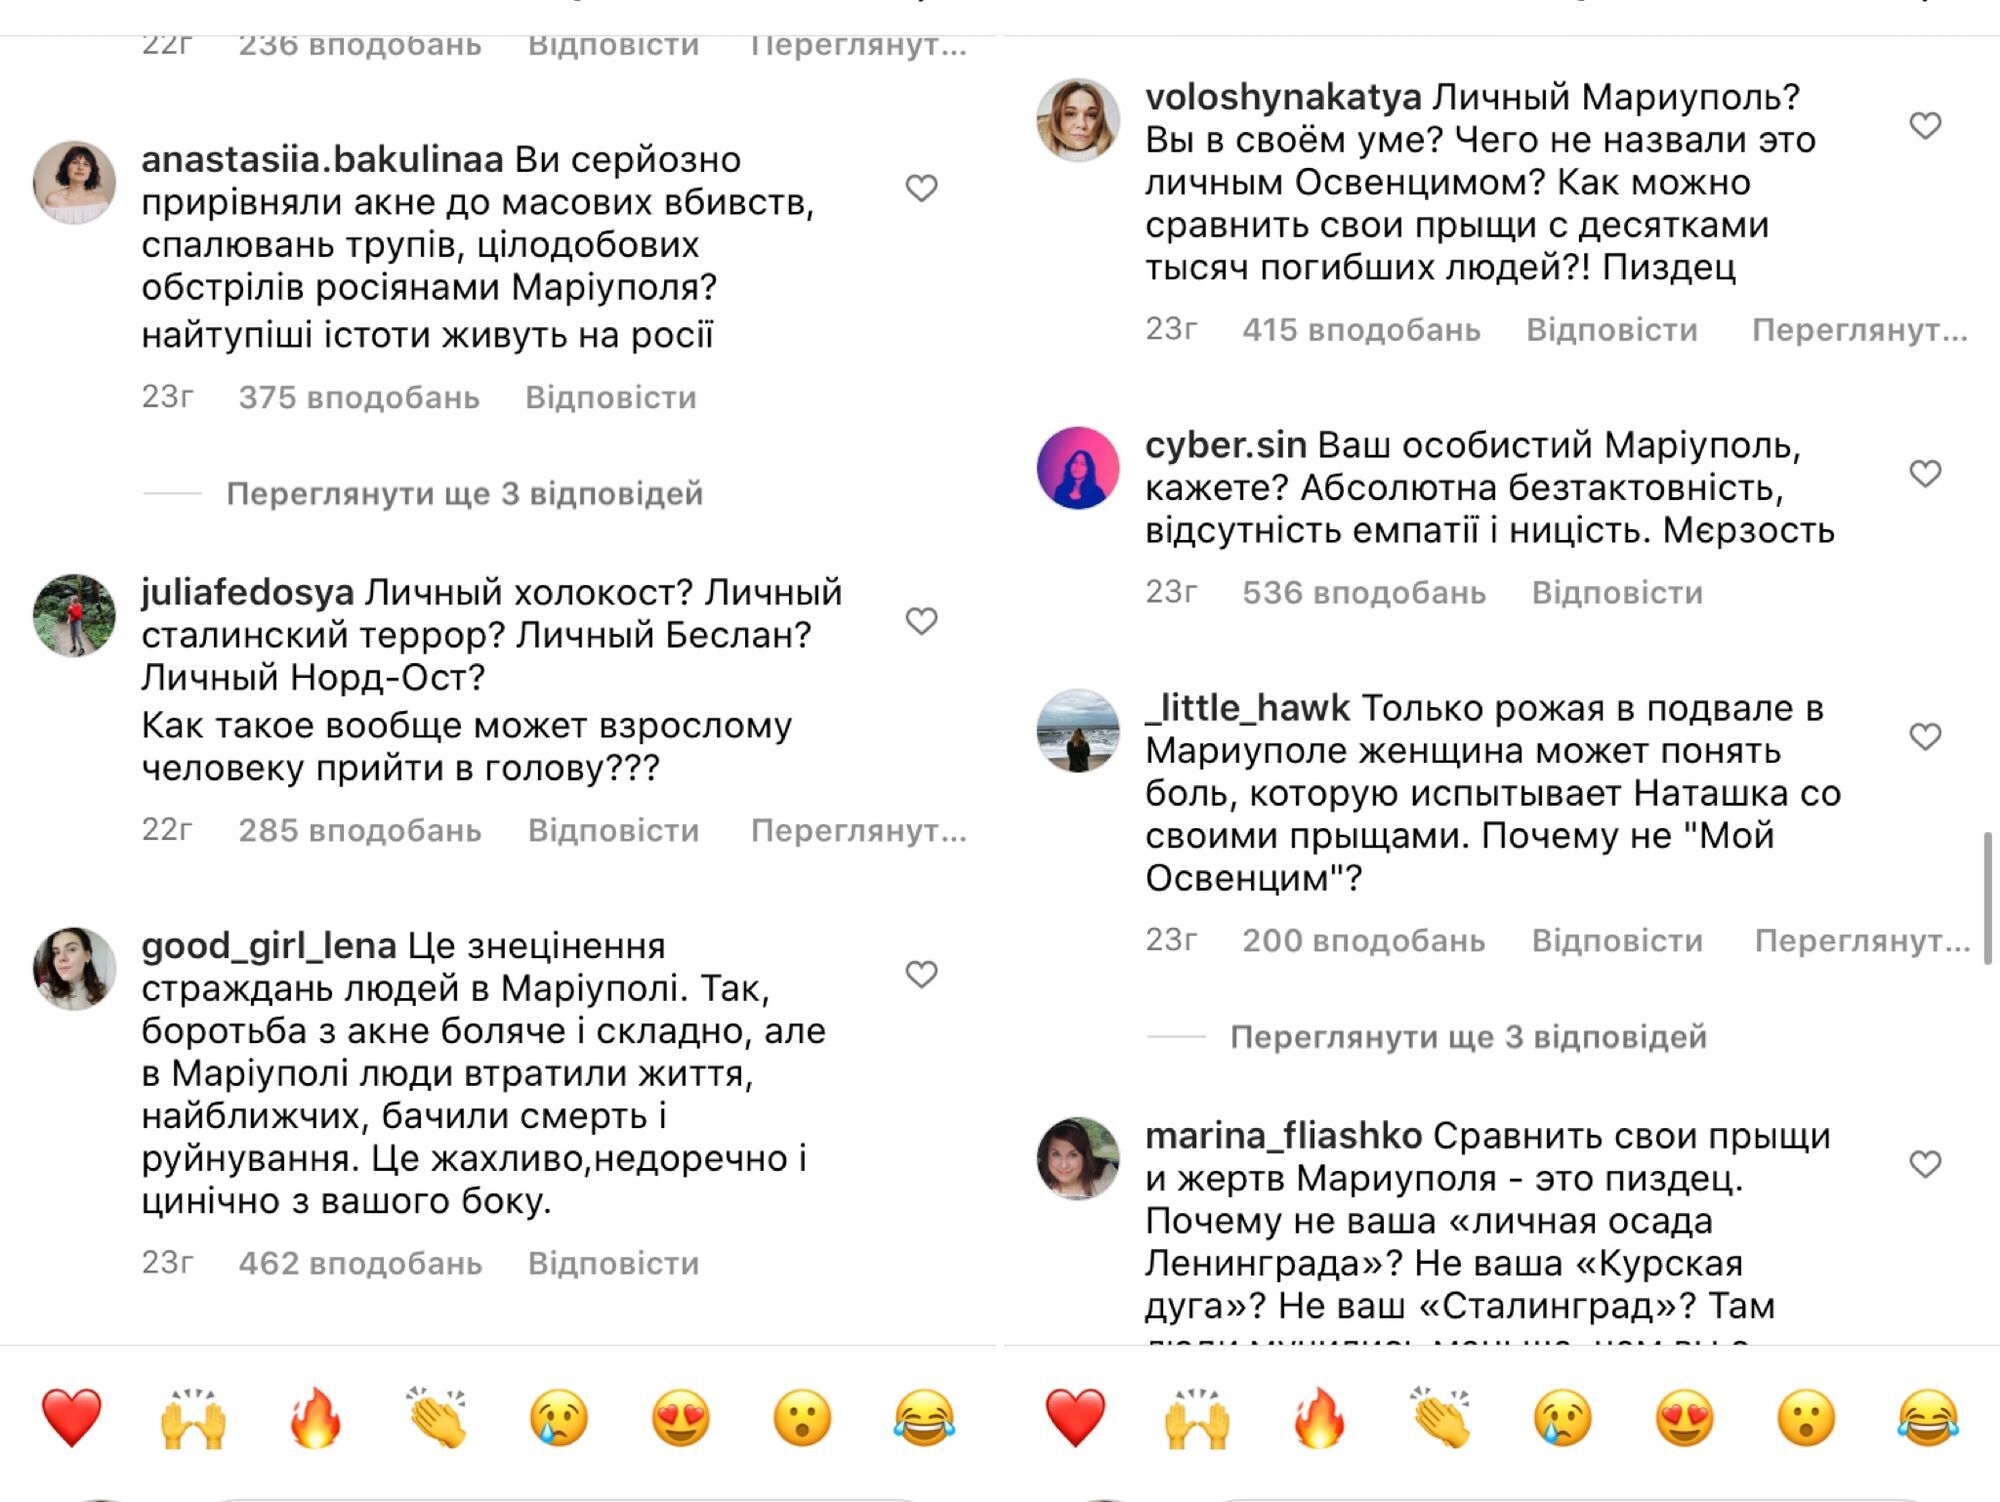 Россиянка-трансгендер сравнила свои прыщи с Мариуполем и спровоцировала громкий скандал 4